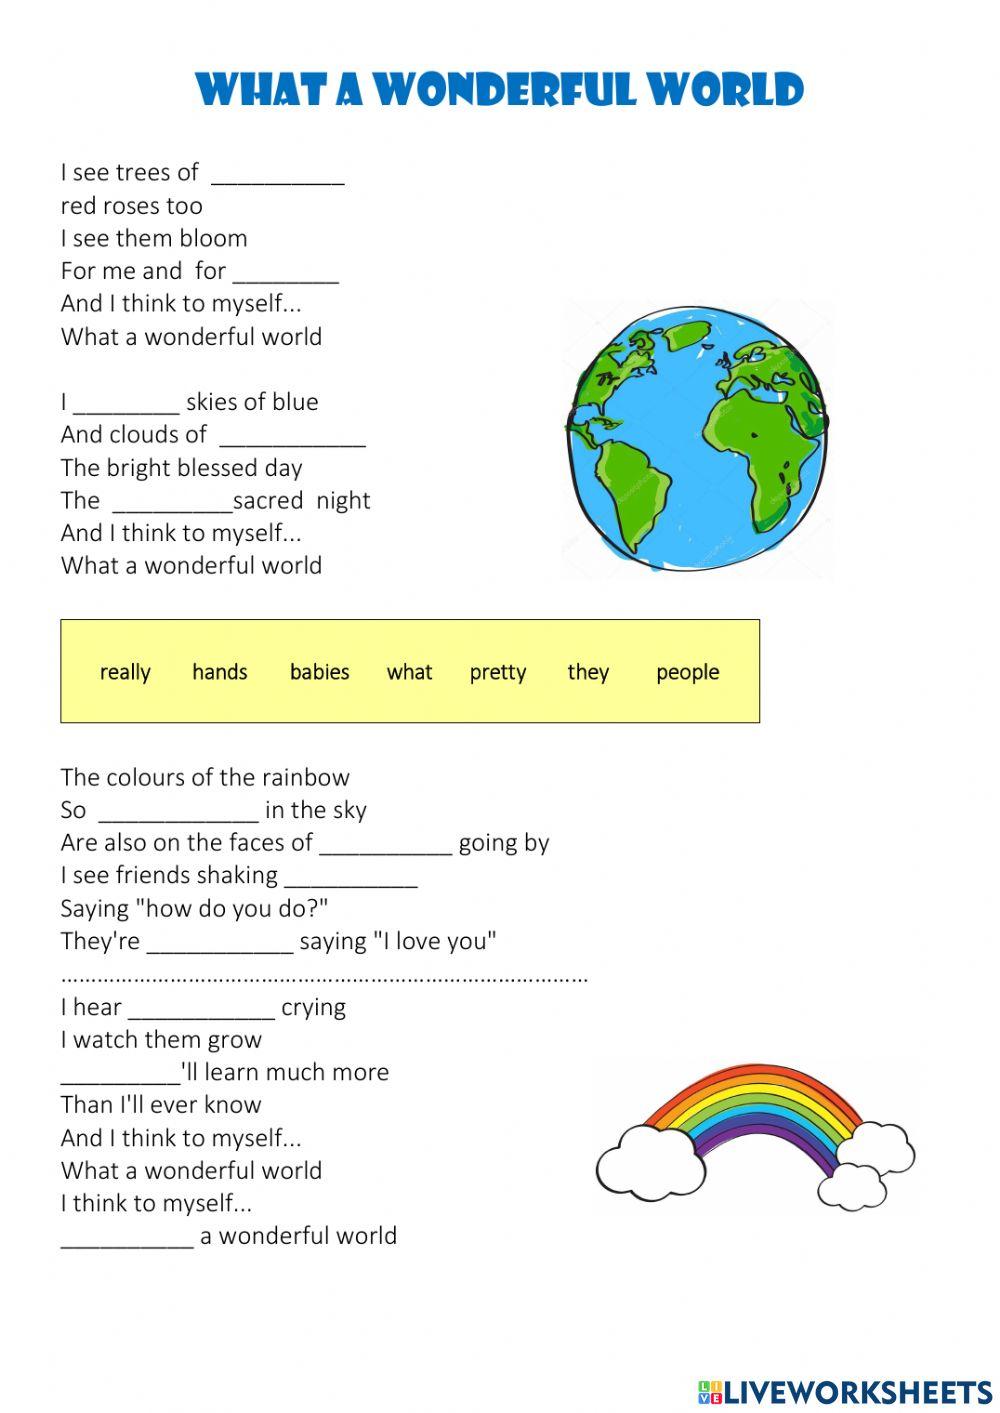 Atividades de Inglês: What a wonderful world - letra e tradução